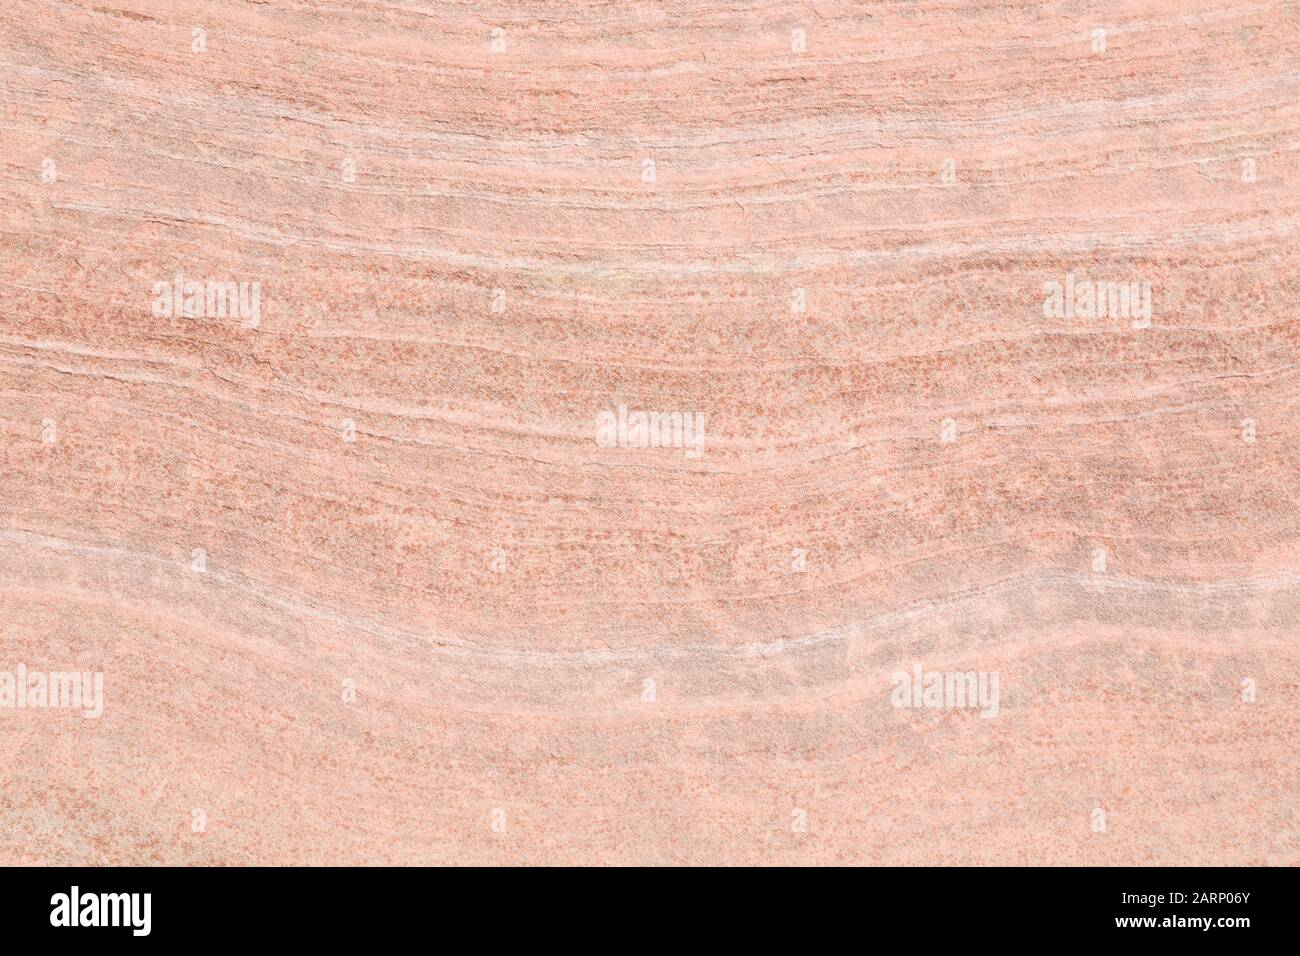 Nahaufnahme geologischer Schichten (Schichten) in einem sedimentären Gestein, ideal für einen Geologiehintergrund oder eine Vorlage Stockfoto